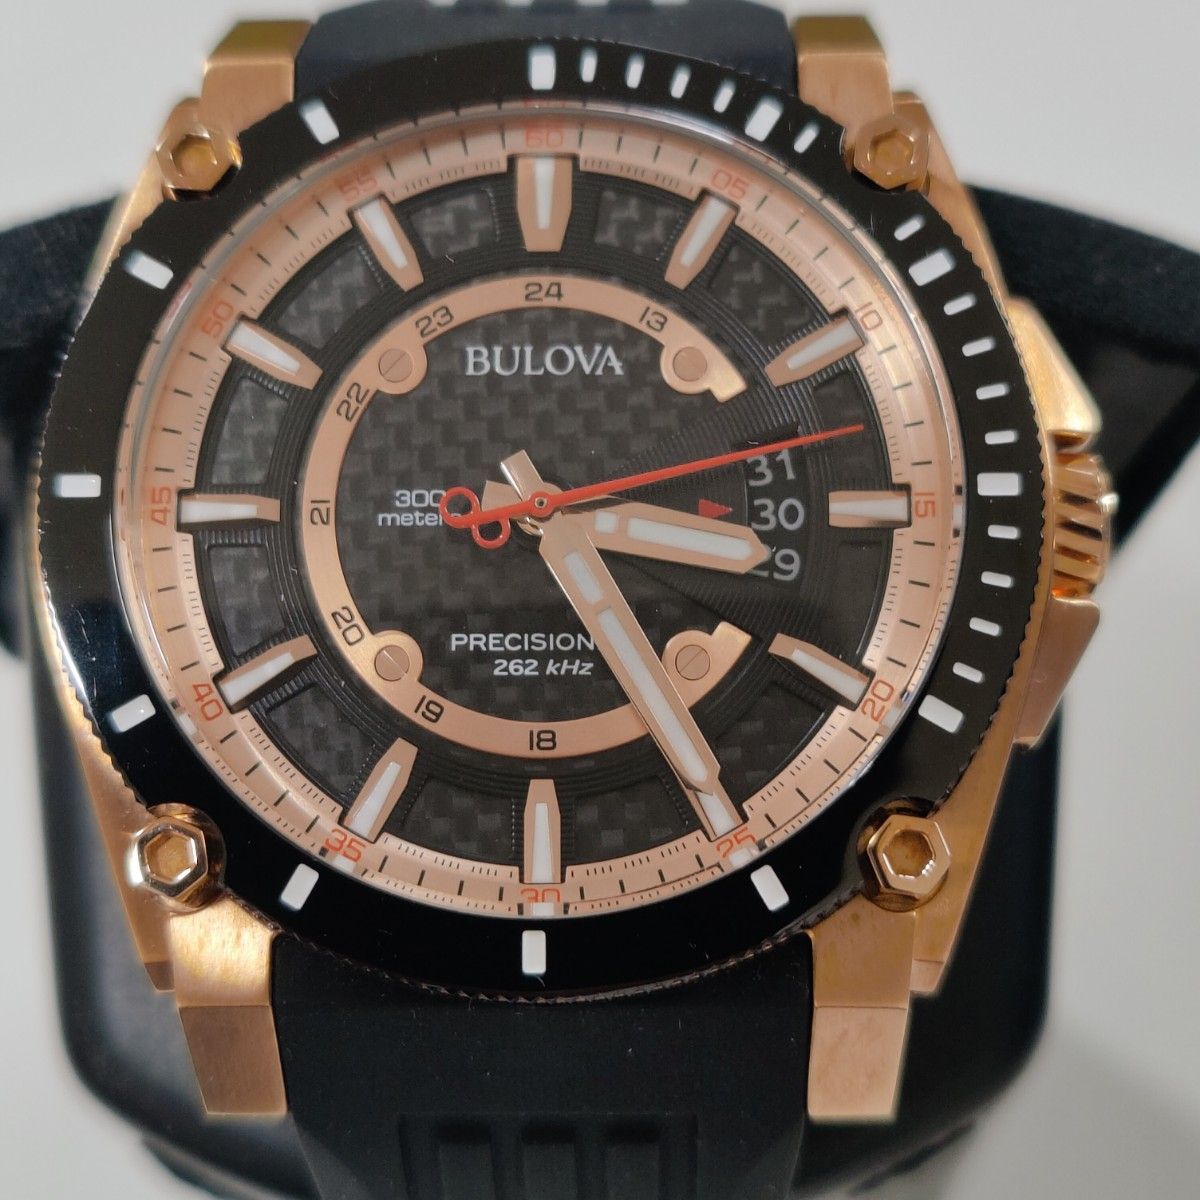 ブローバ BULOVA 98B152 プレシジョニスト 国内正規品 メンズ腕時計